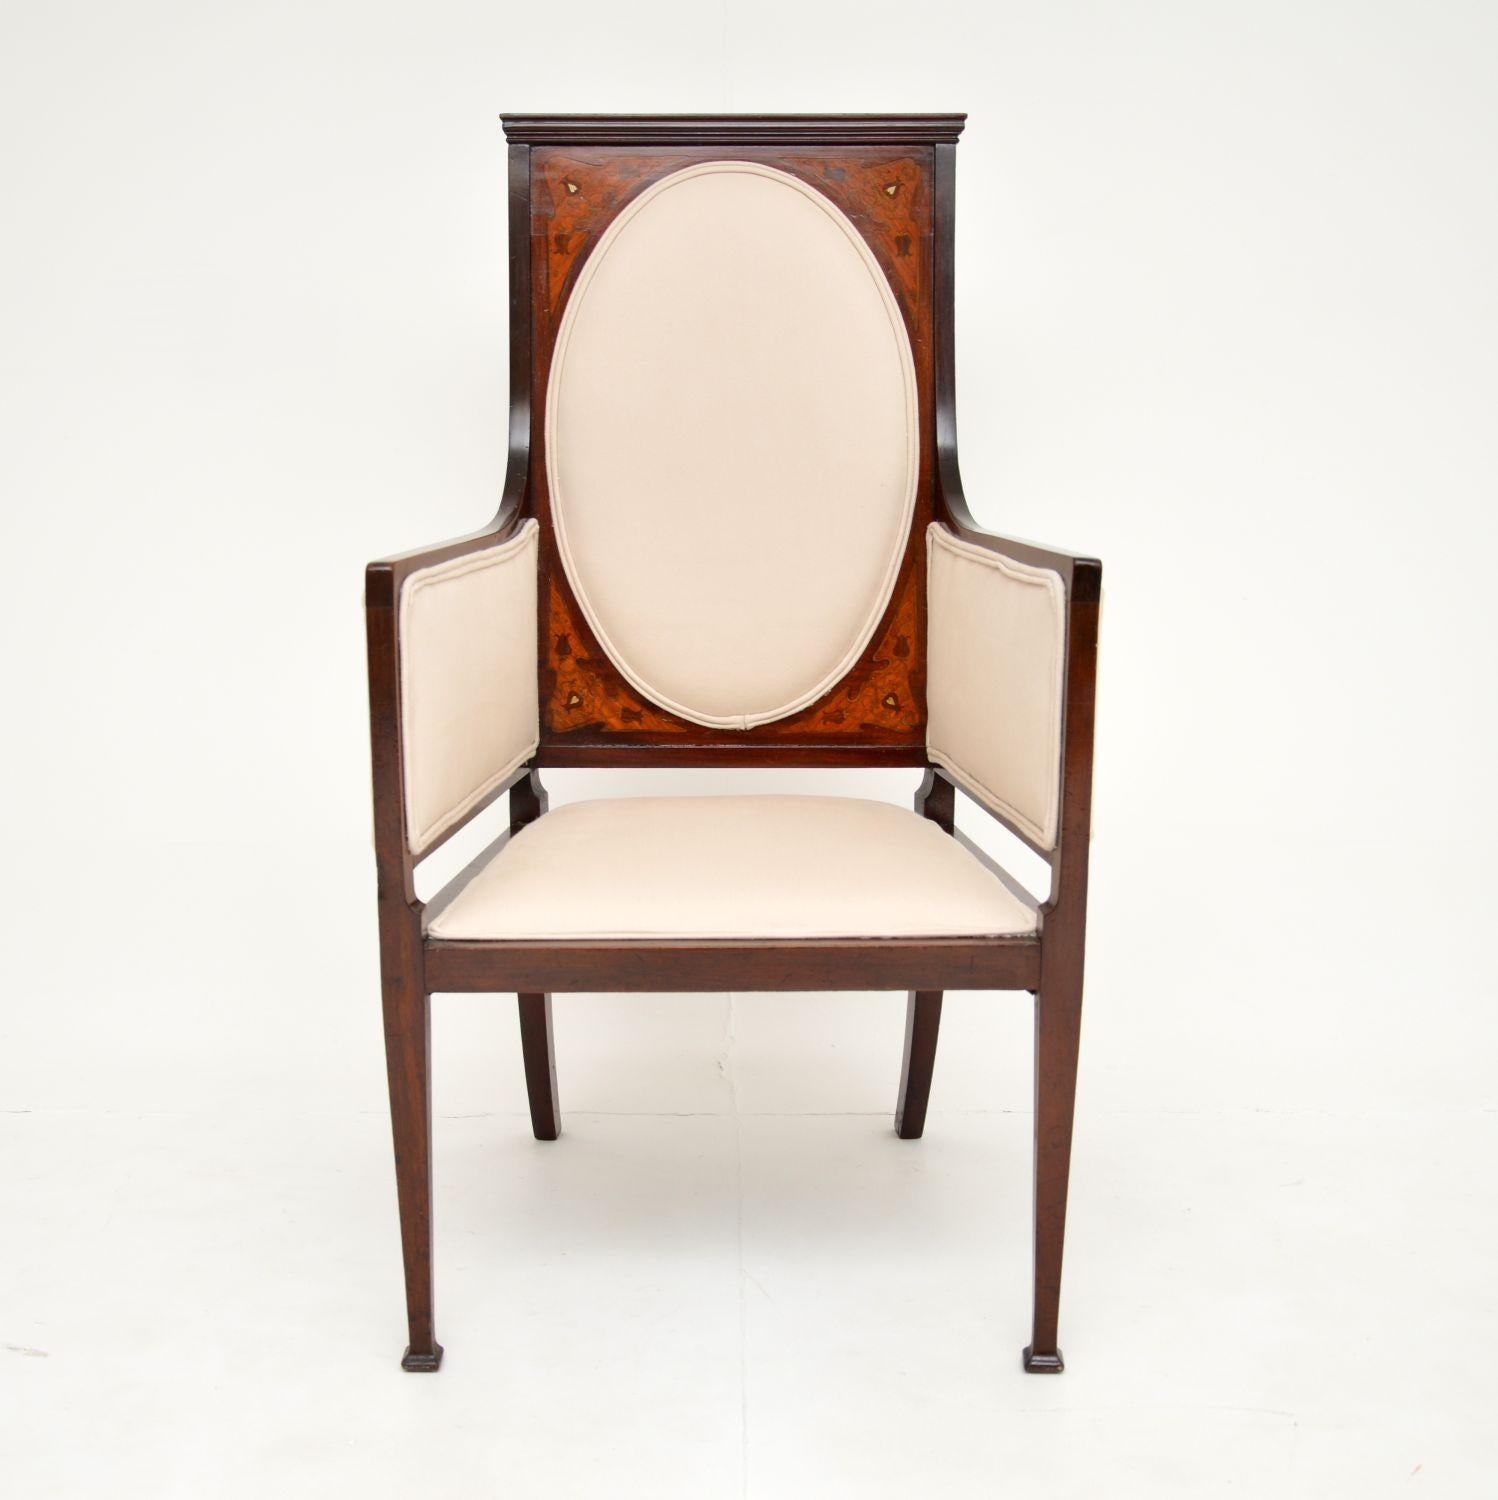 Un beau fauteuil ancien de style Arte Antiques avec d'exquis motifs incrustés. Fabriqué en Angleterre, il date d'environ 1890.

Ce fauteuil ressemble à un article typique qui aurait été vendu à l'origine par Liberty of London.

Il présente